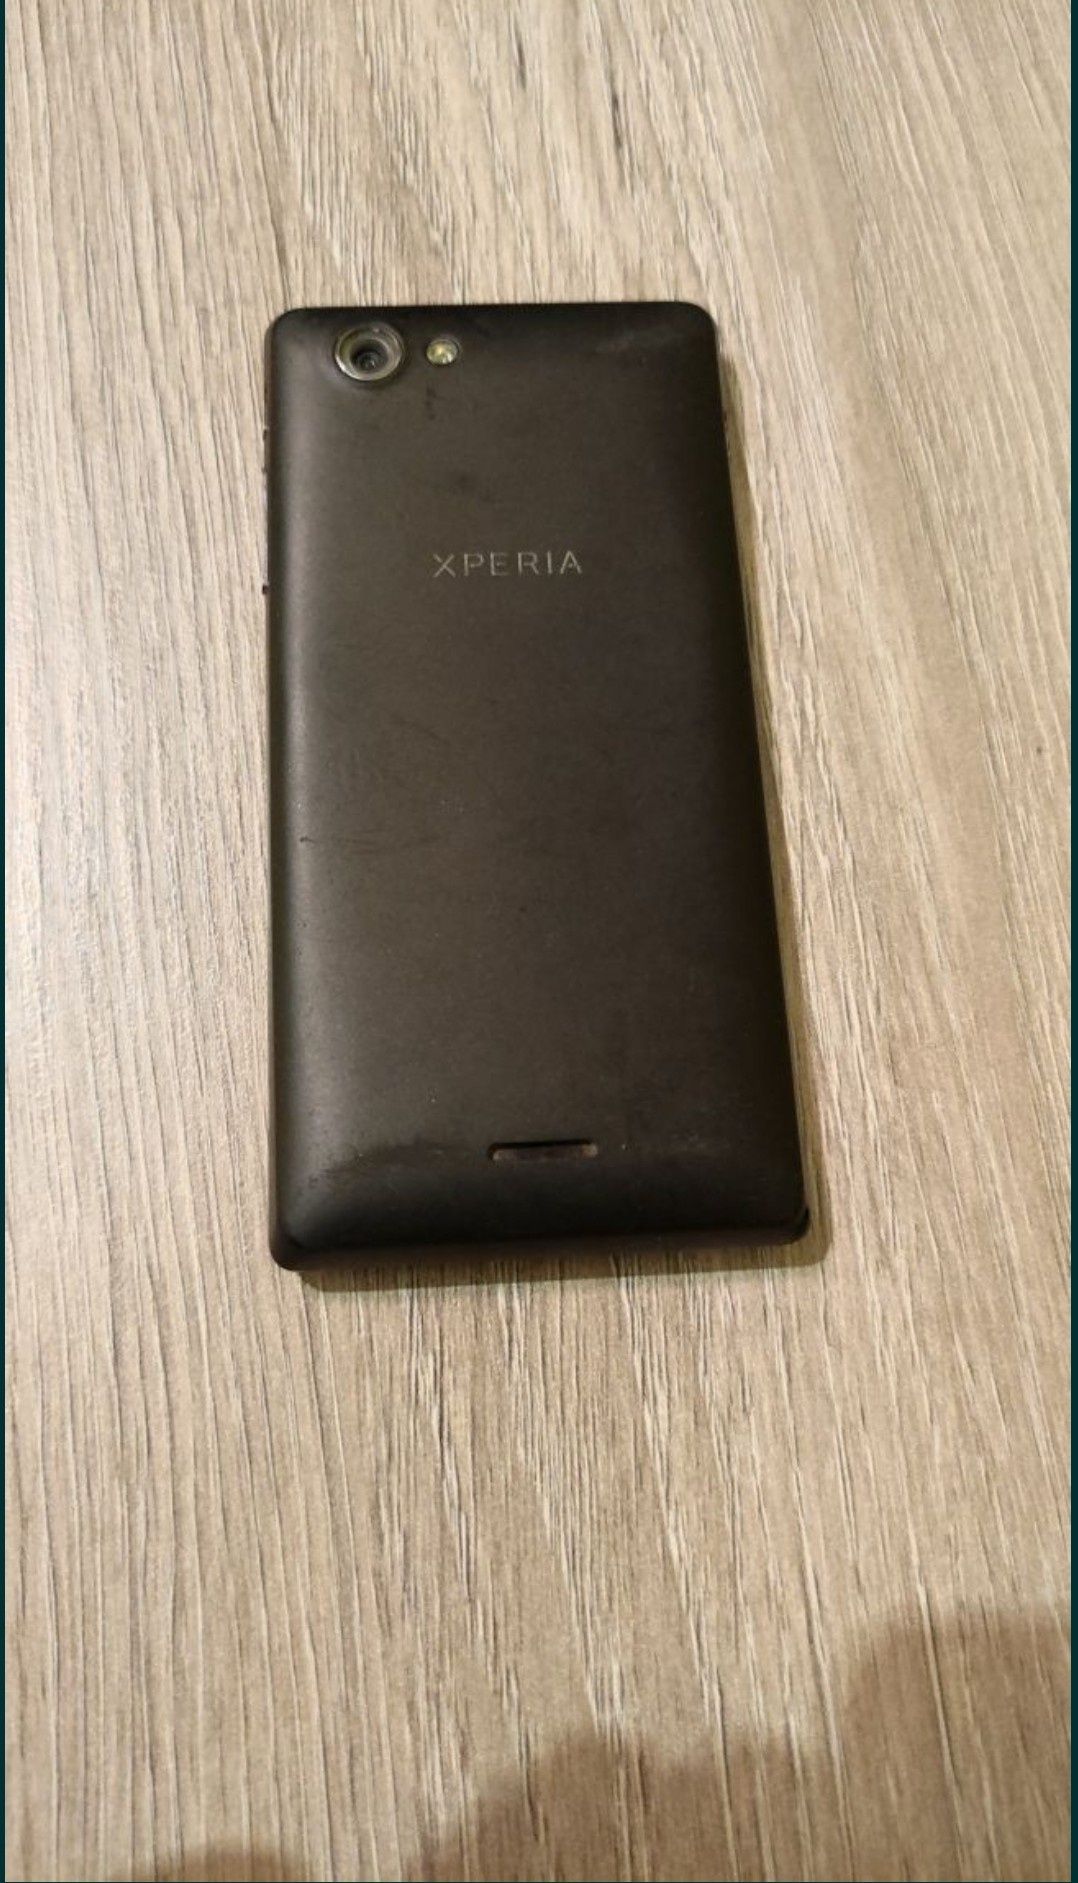 Sony Xperia j telefon smartfon